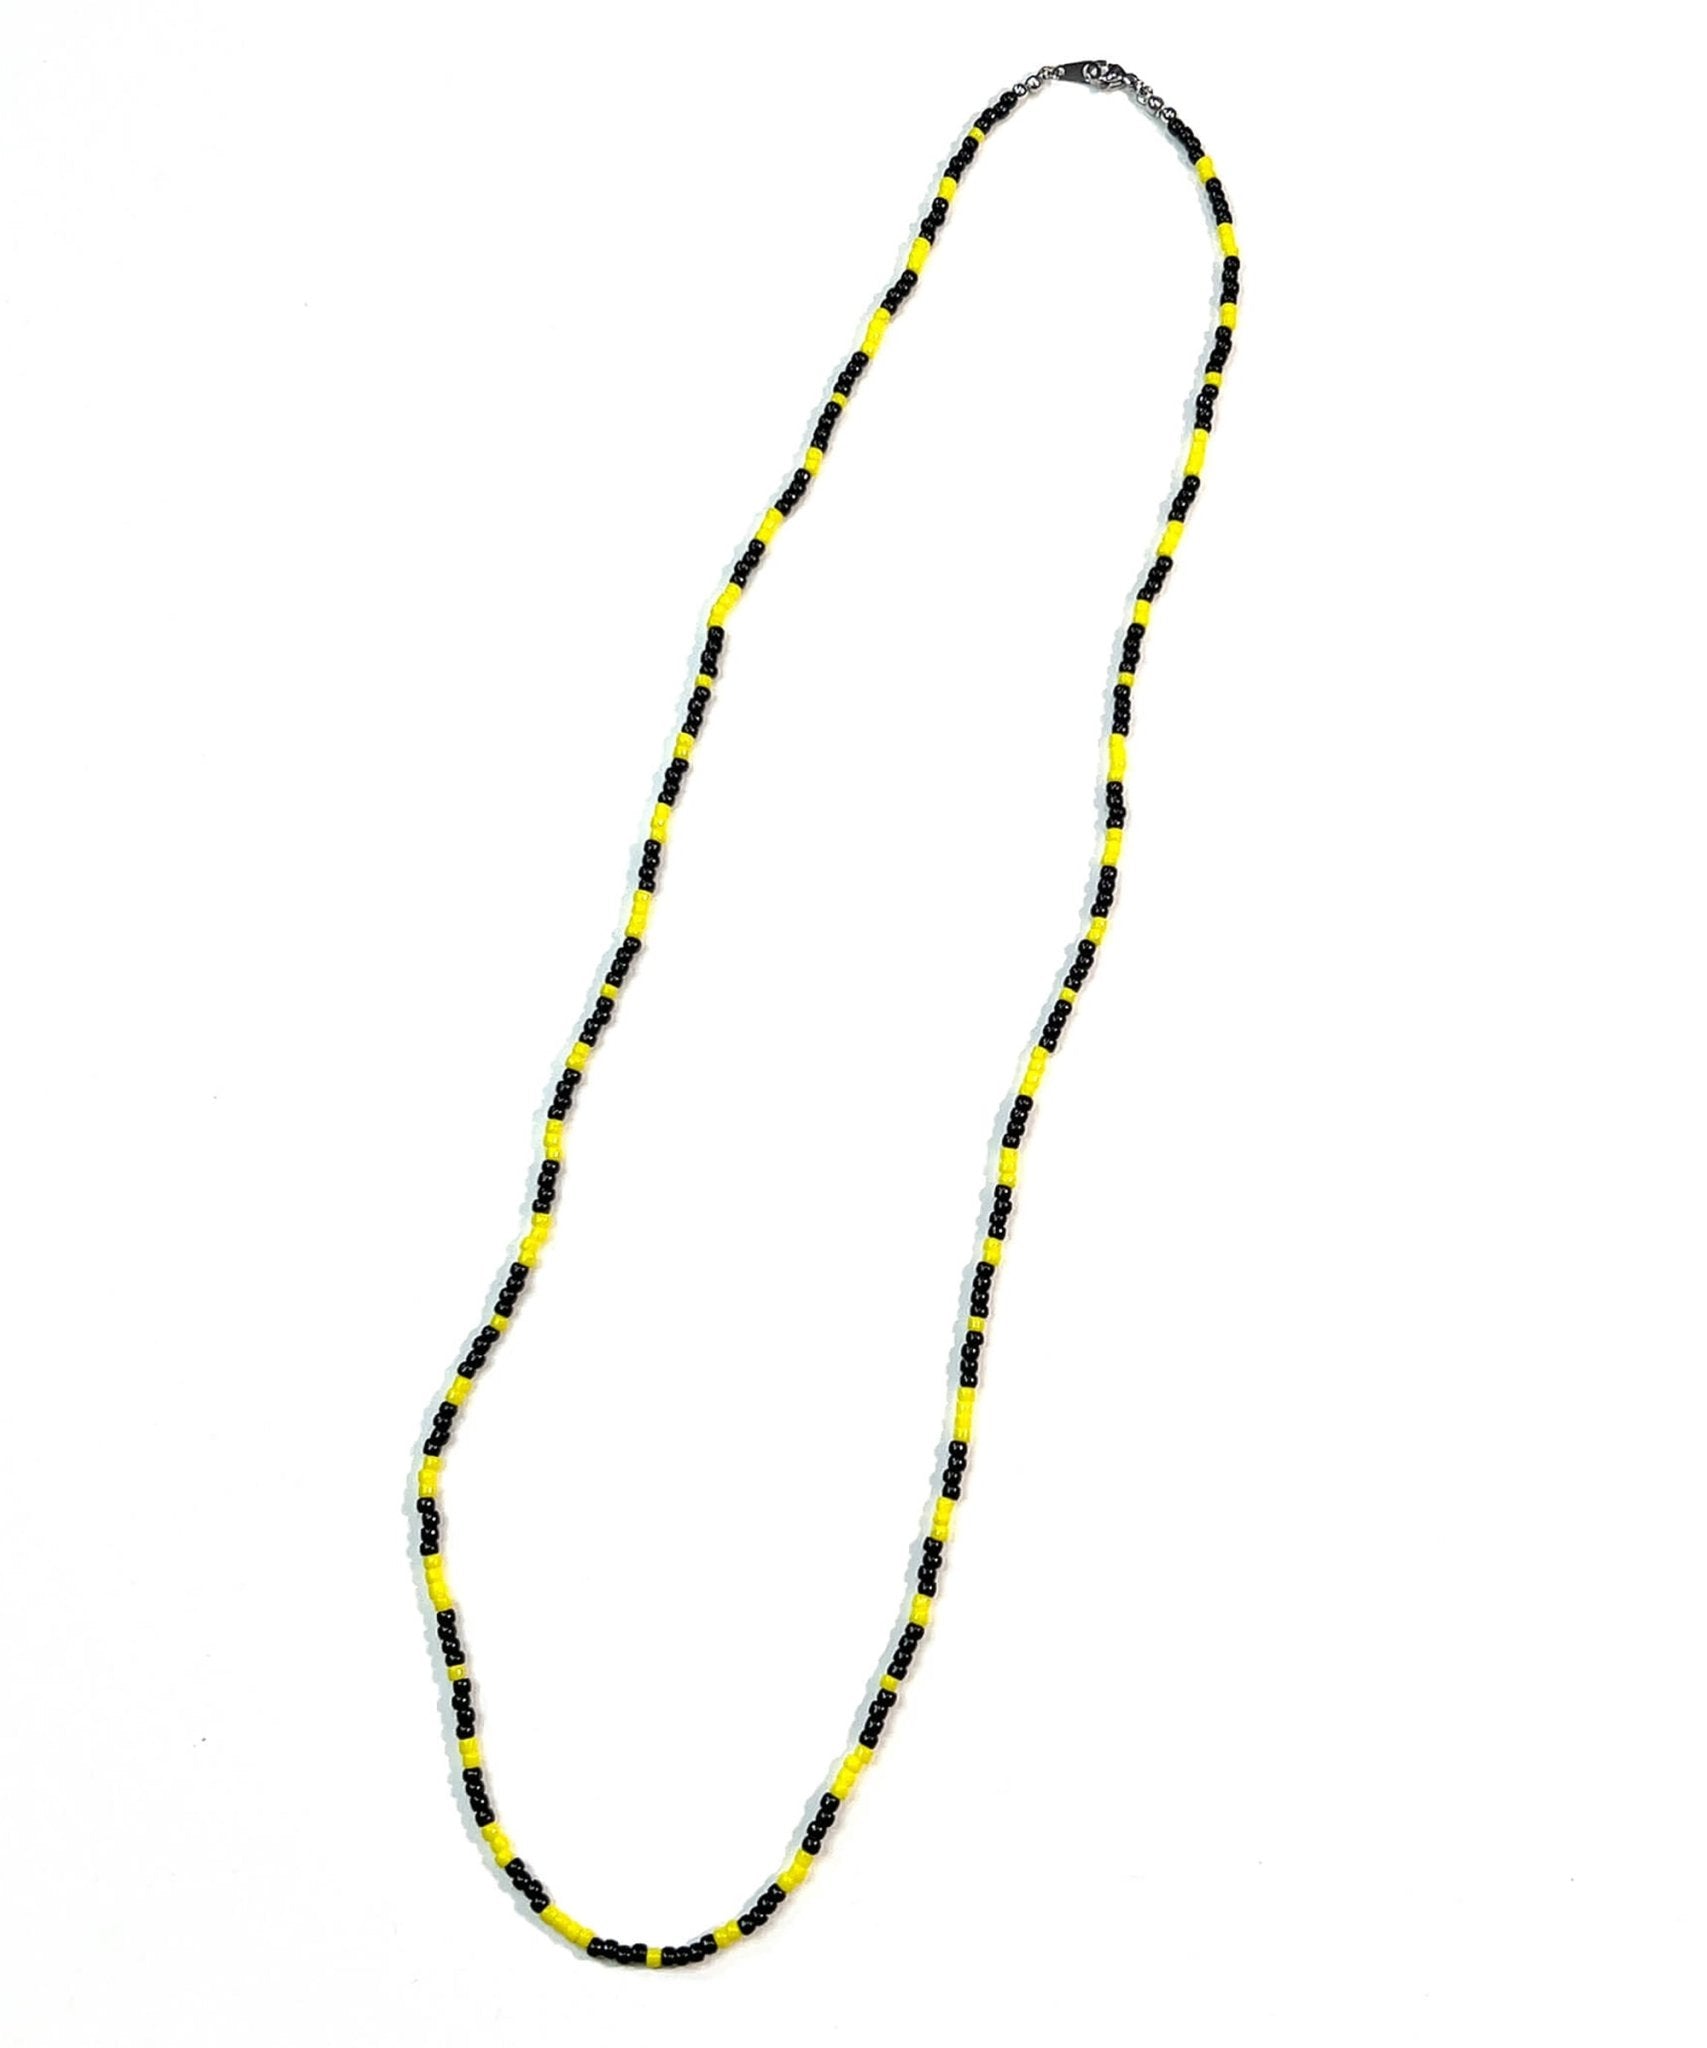 【11/5(日)まで予約受付アイテム】Beads necklace collaboration with Adder - BLACK × YELLOW - DIET BUTCHER